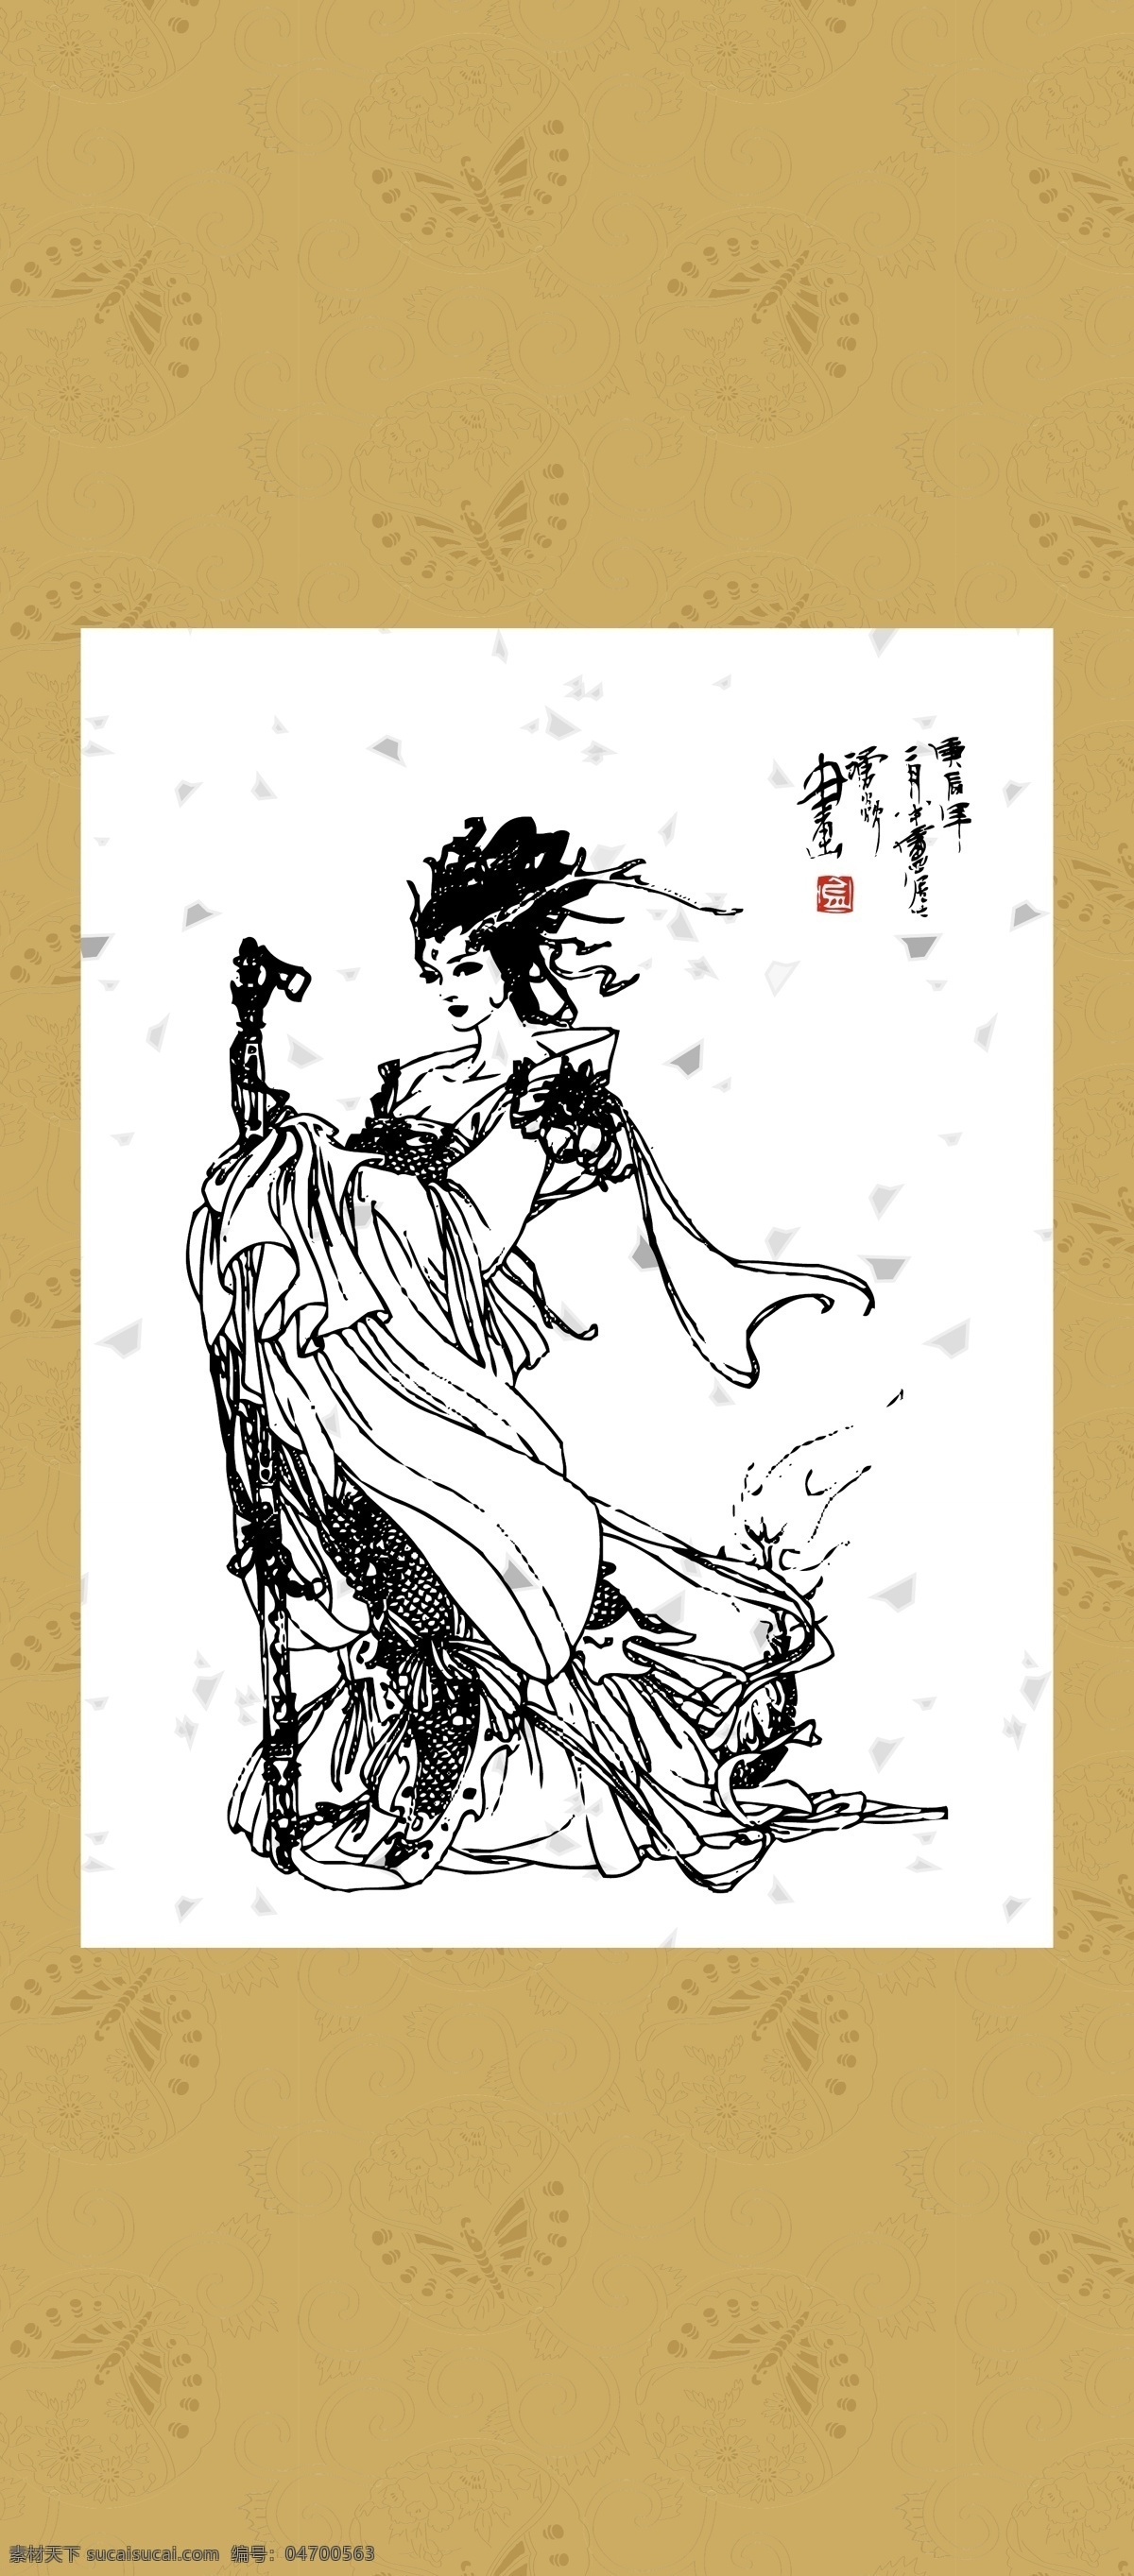 仕女 龙女 白描 图案 绘画 古典 传统纹样 人物 神话传说 传统文化 文化艺术 矢量